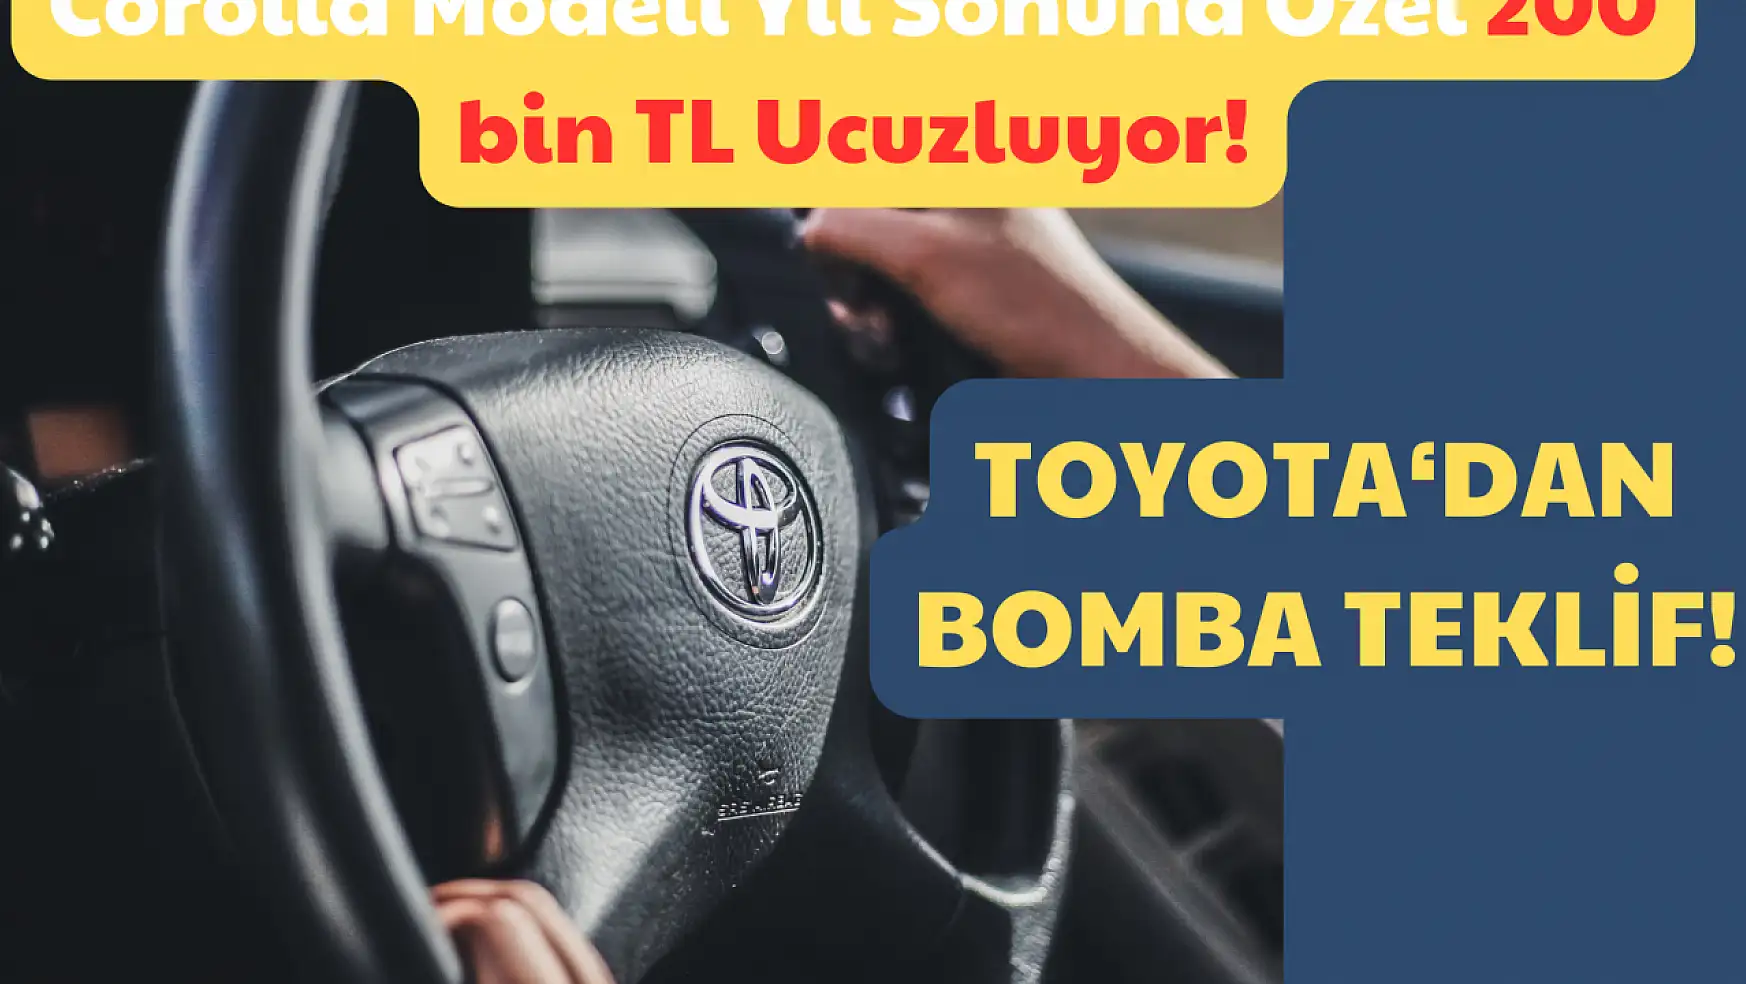 Toyota'dan Bomba Teklif: Corolla Modeli Yıl Sonuna Özel 200 bin TL Ucuzlasın!